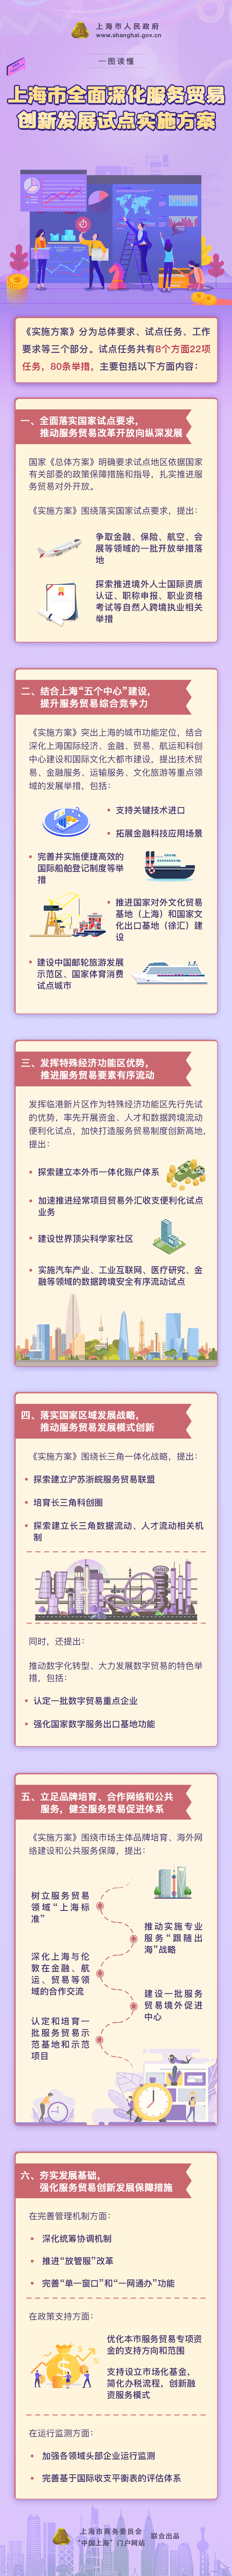 一图读懂《上海市全面深化服务贸易创新发展试点实施方案》.jpg